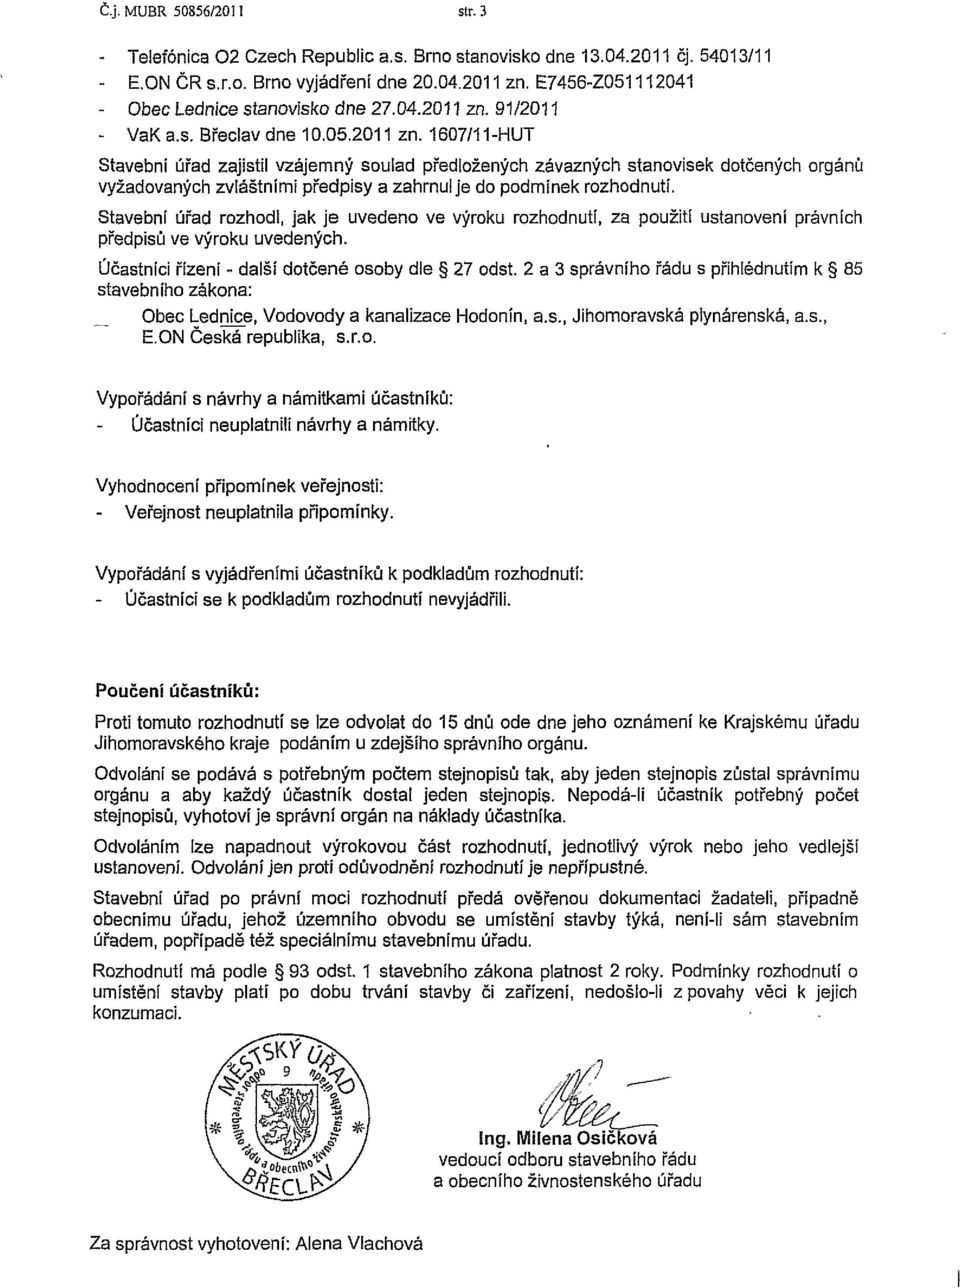 91/2011 - VaKa.s. Břeclav dne 10.05.2011 zn. 1607/11-HUT Stavební úřad zajistil vzájemný soulad předložených závazných stanovisek dotčených orgánů vyžadovaných zvláštními předpisy a zahrnu!